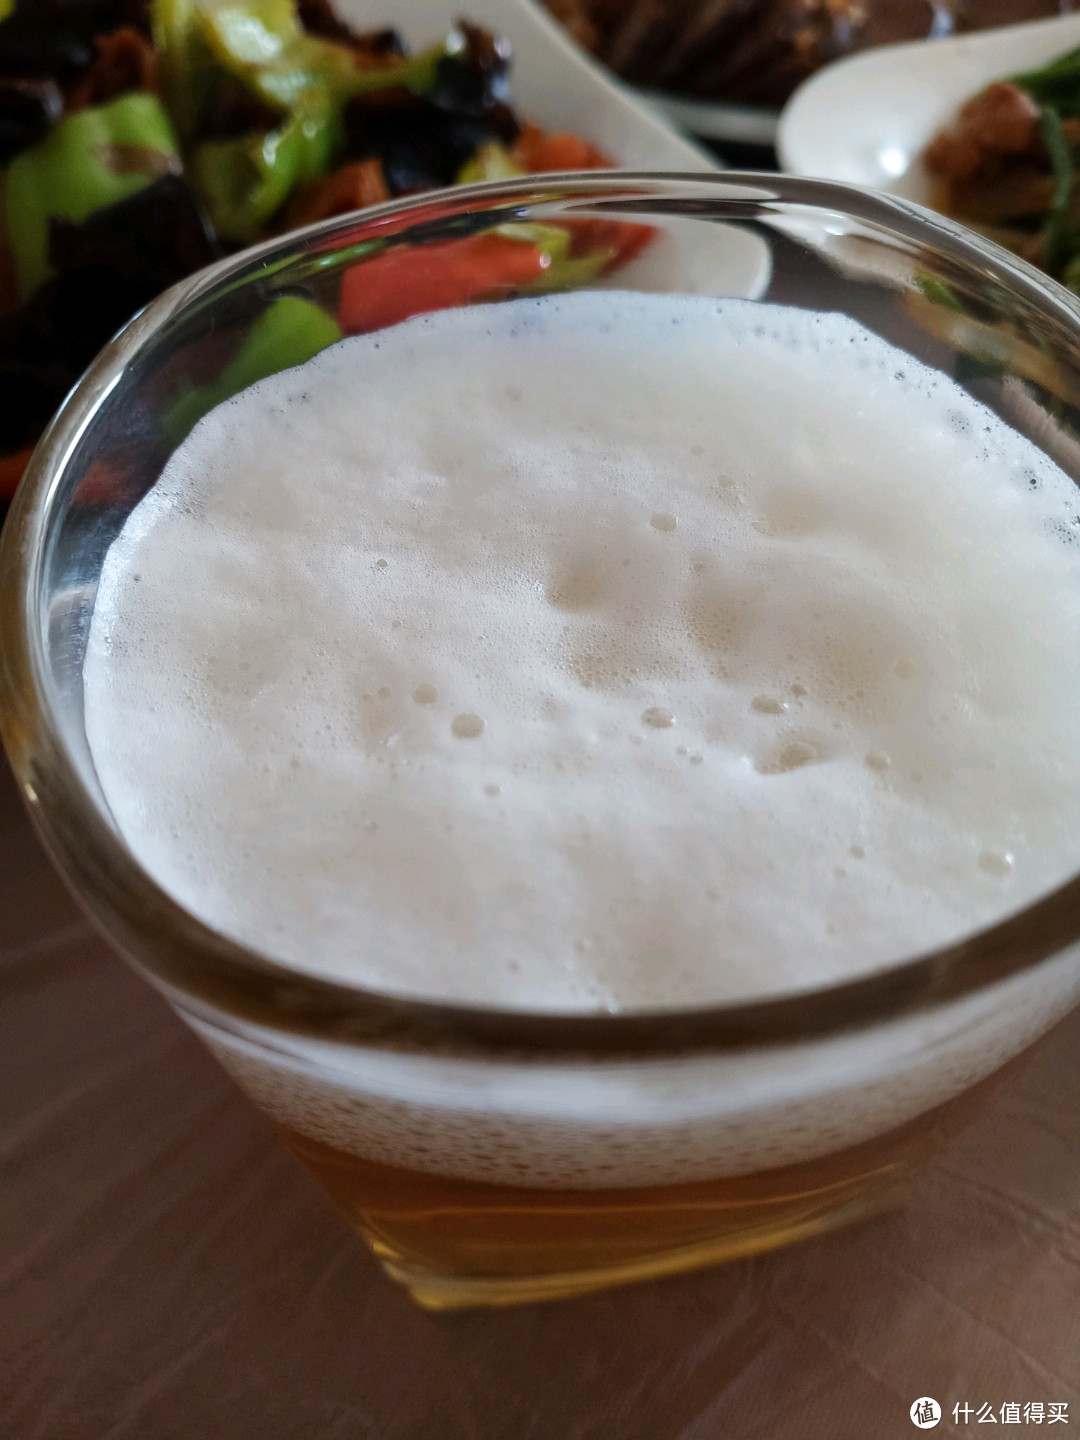 与霓轰同步享用，购自7－11便利店的日本产麒麟经典芳醇限定版啤酒评测